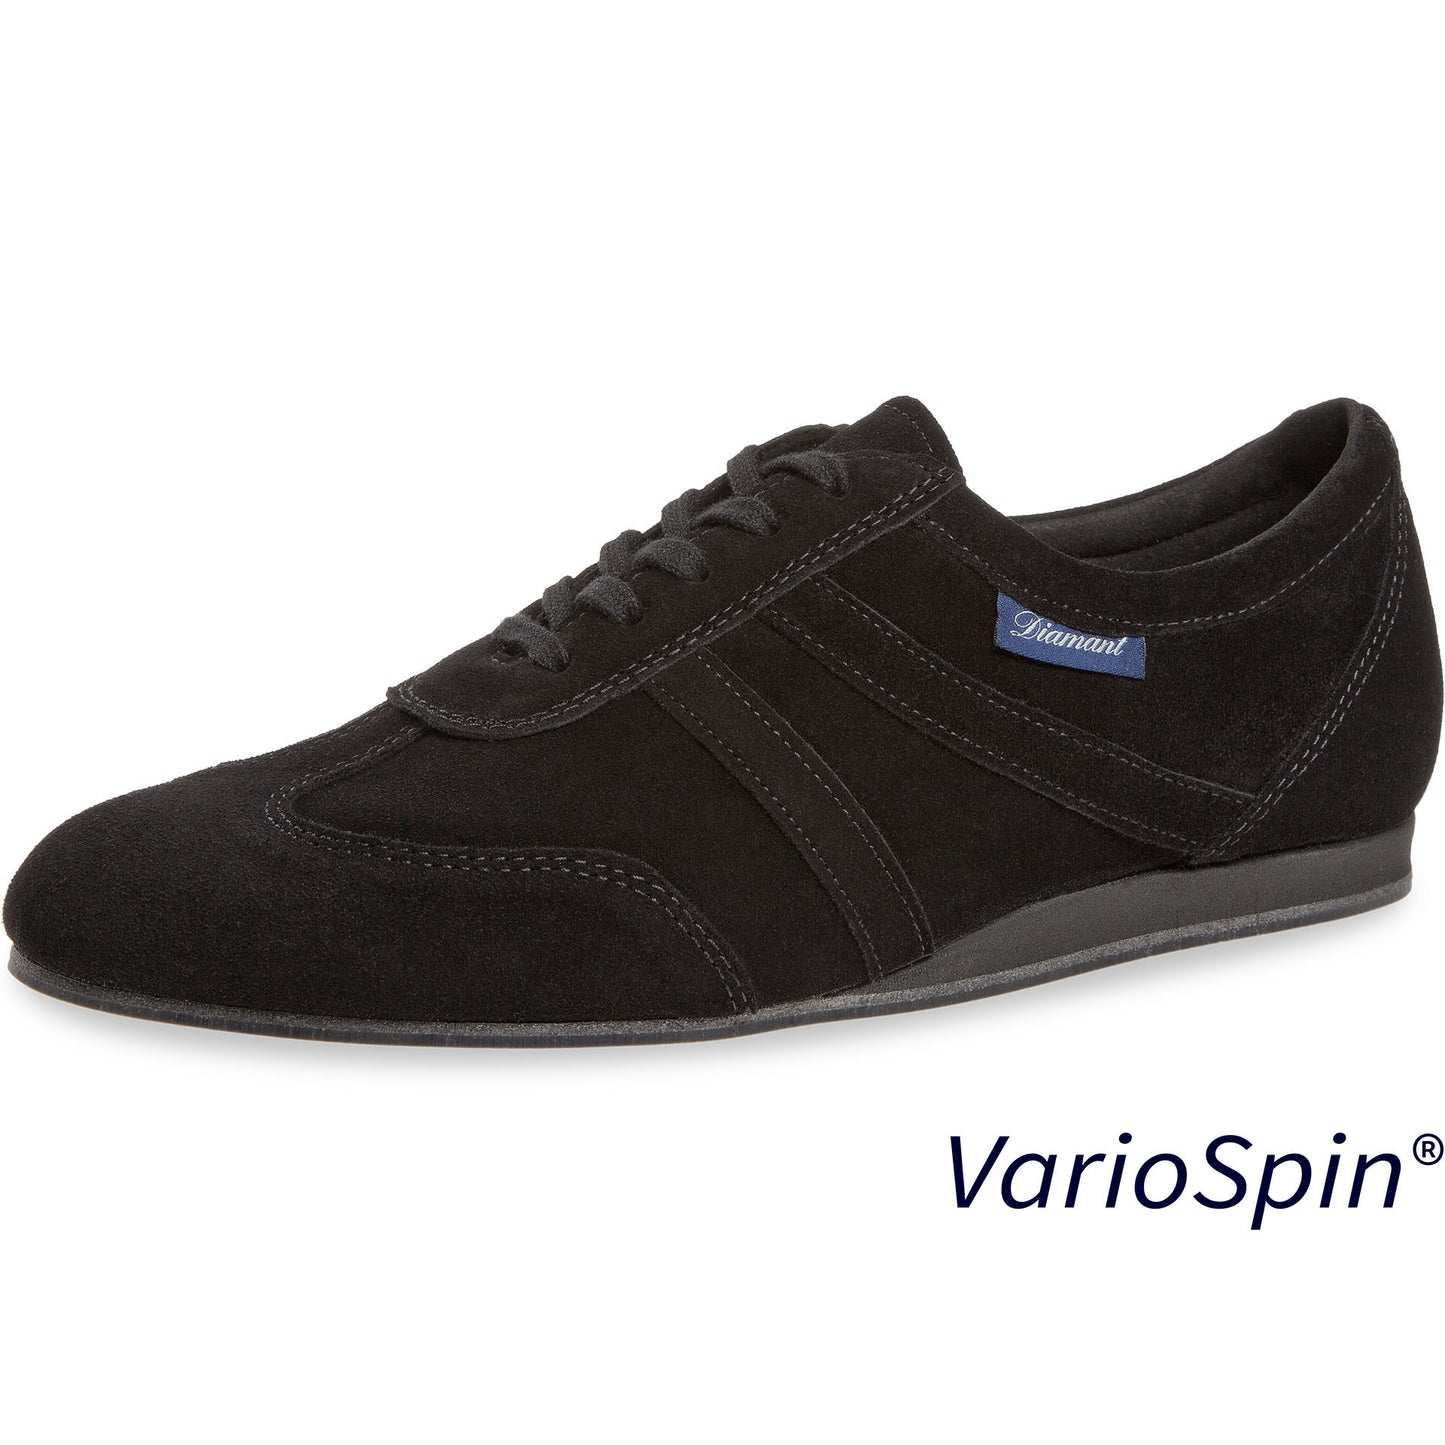 133-426-001-V Herren VarioSpin Tanzschuhe Weite K für extra breite Füße